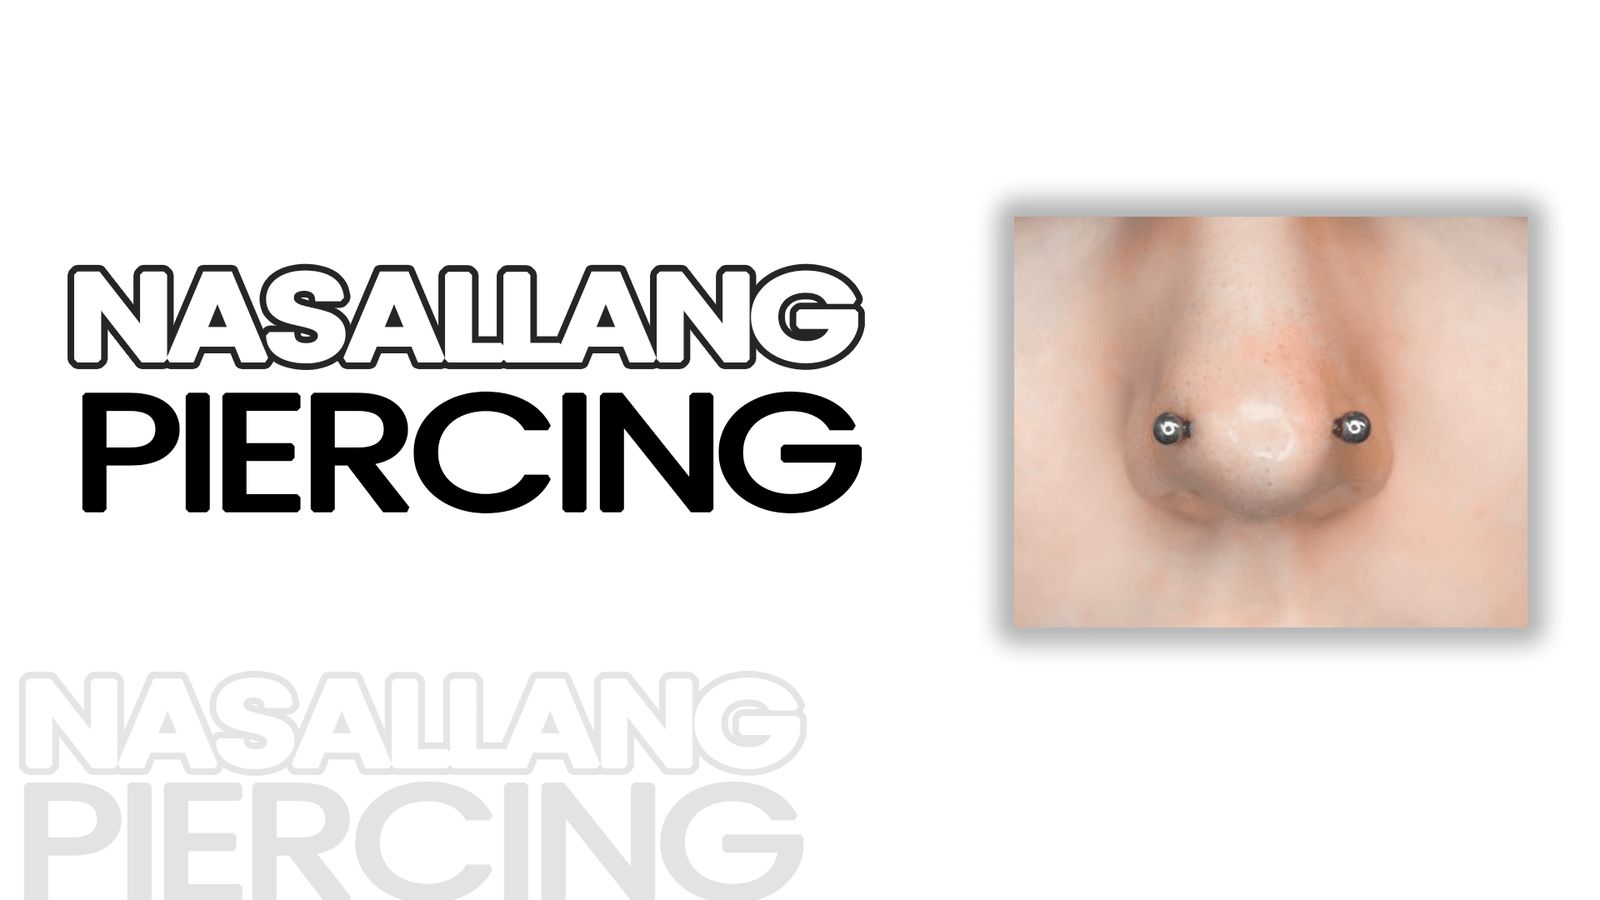 Nasallang Piercing